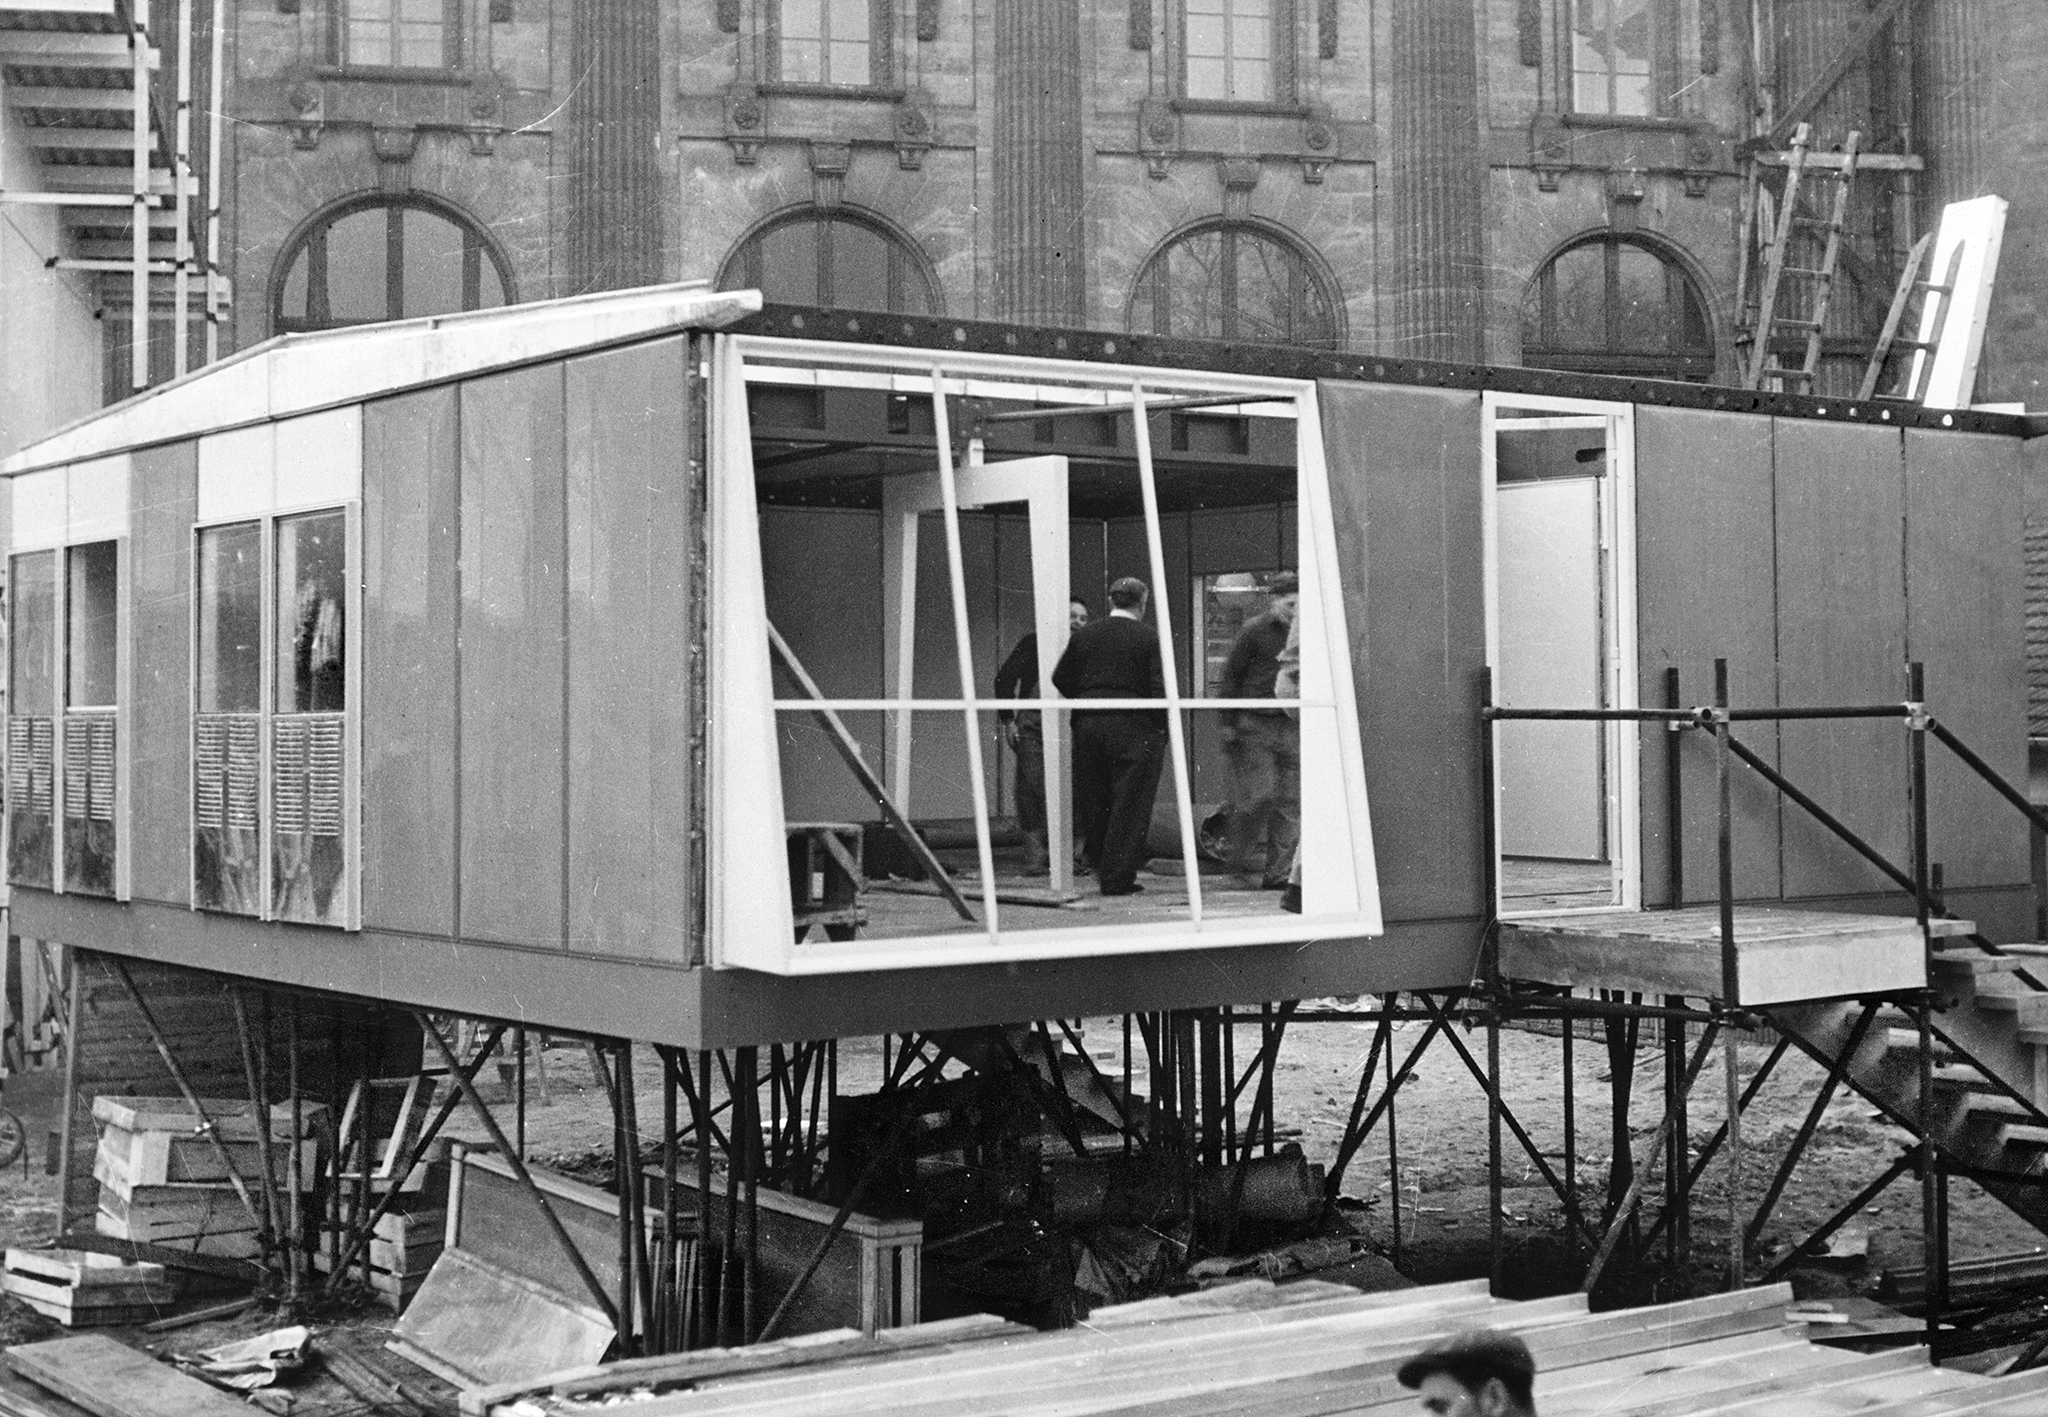 Métropole demountable house. Assembling an 8x8 house at the Housing Exhibition, Salon des Arts Ménagers, Grand Palais, Paris, February 1950.